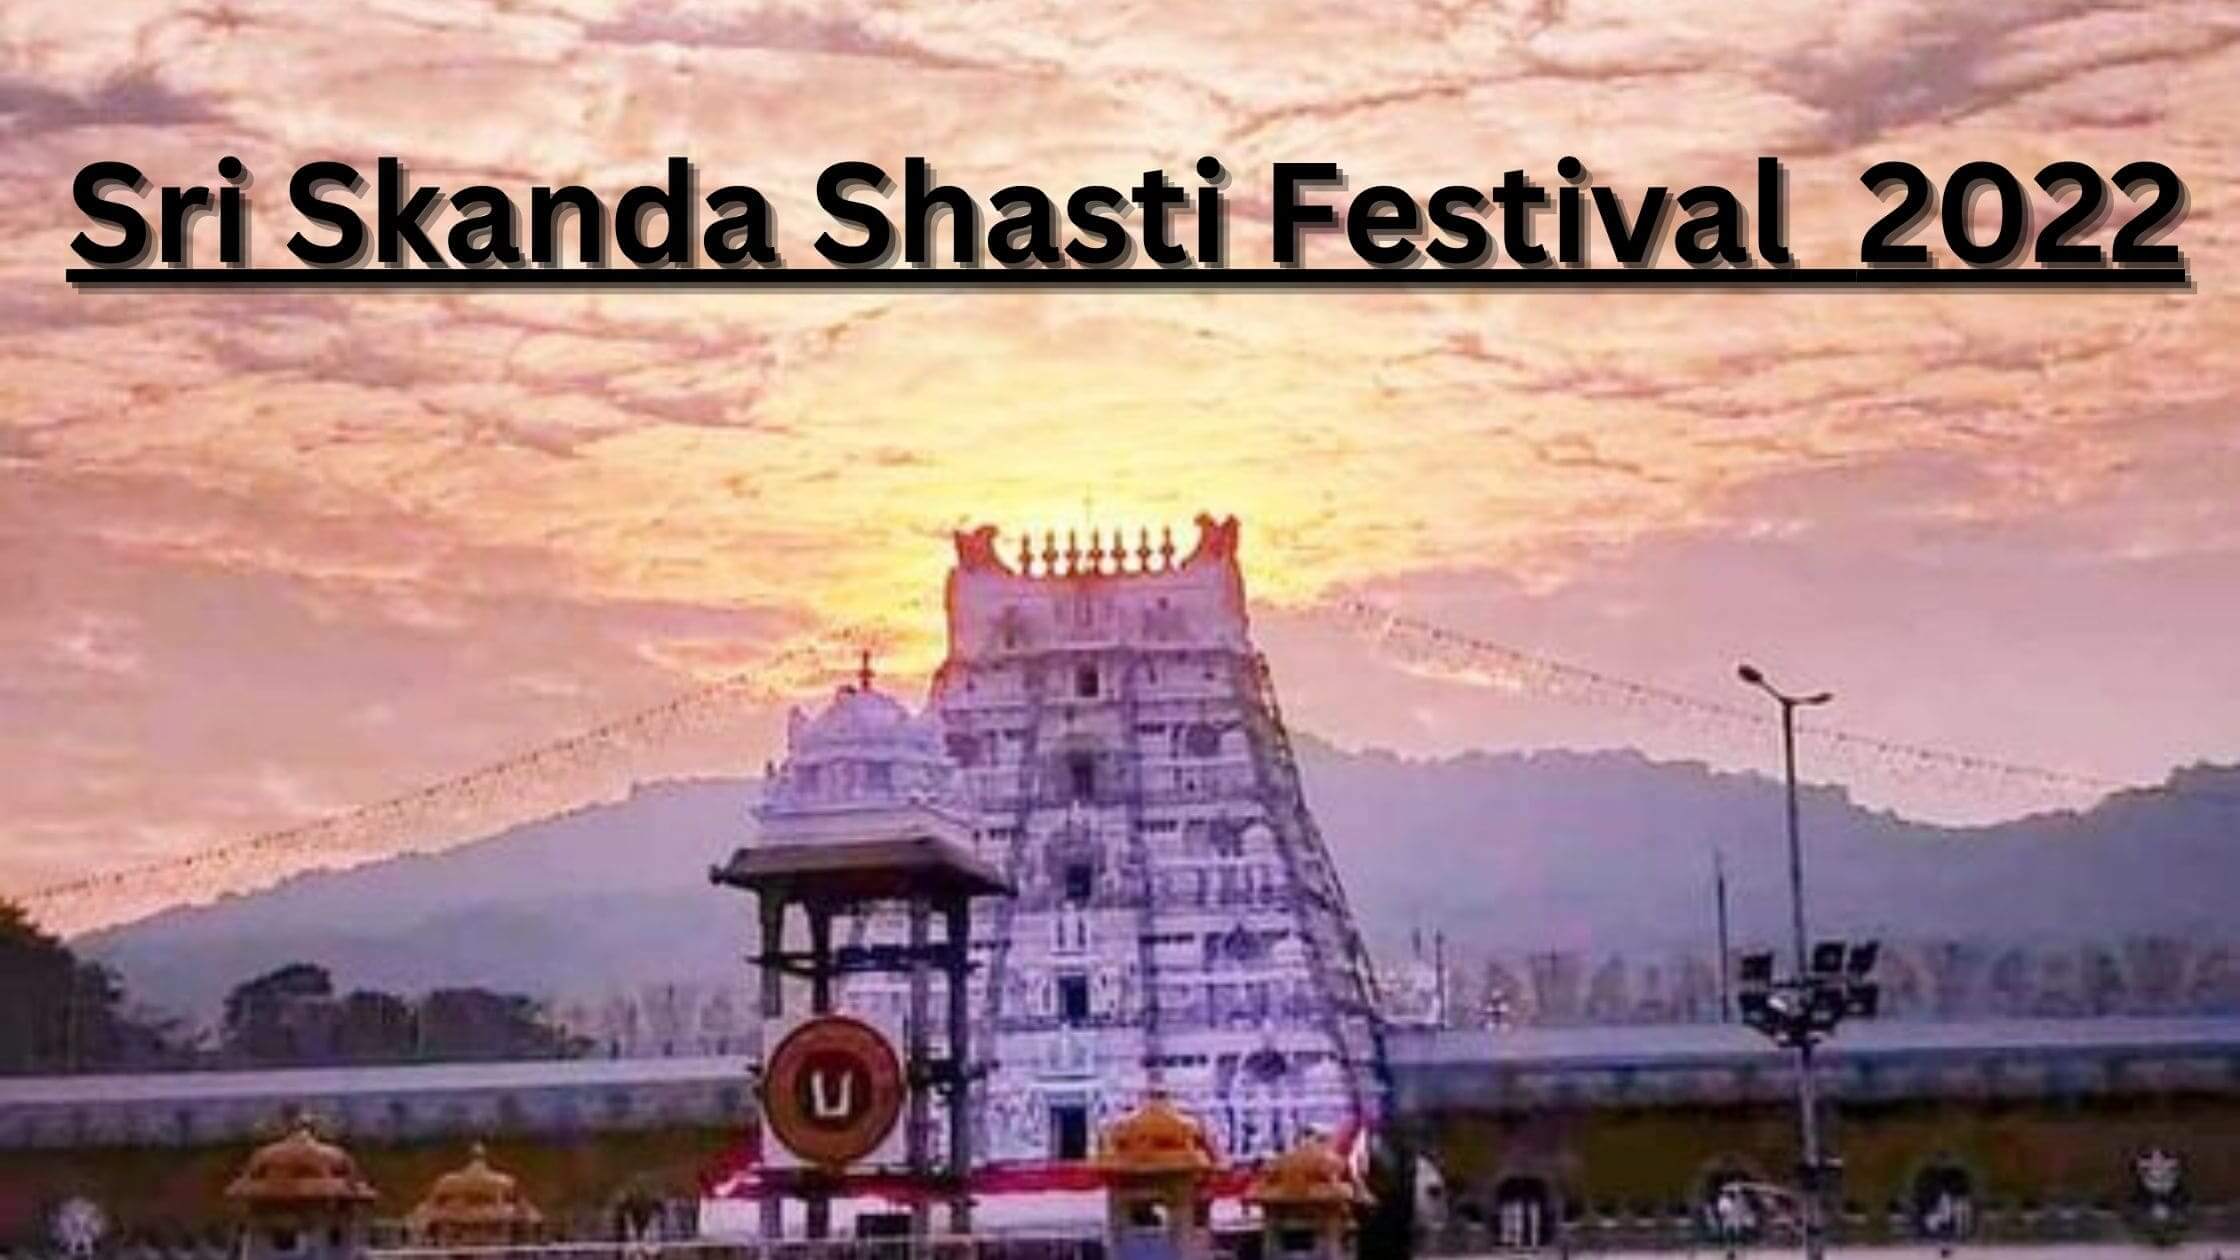 Sri Skanda Shasti Festival 2022